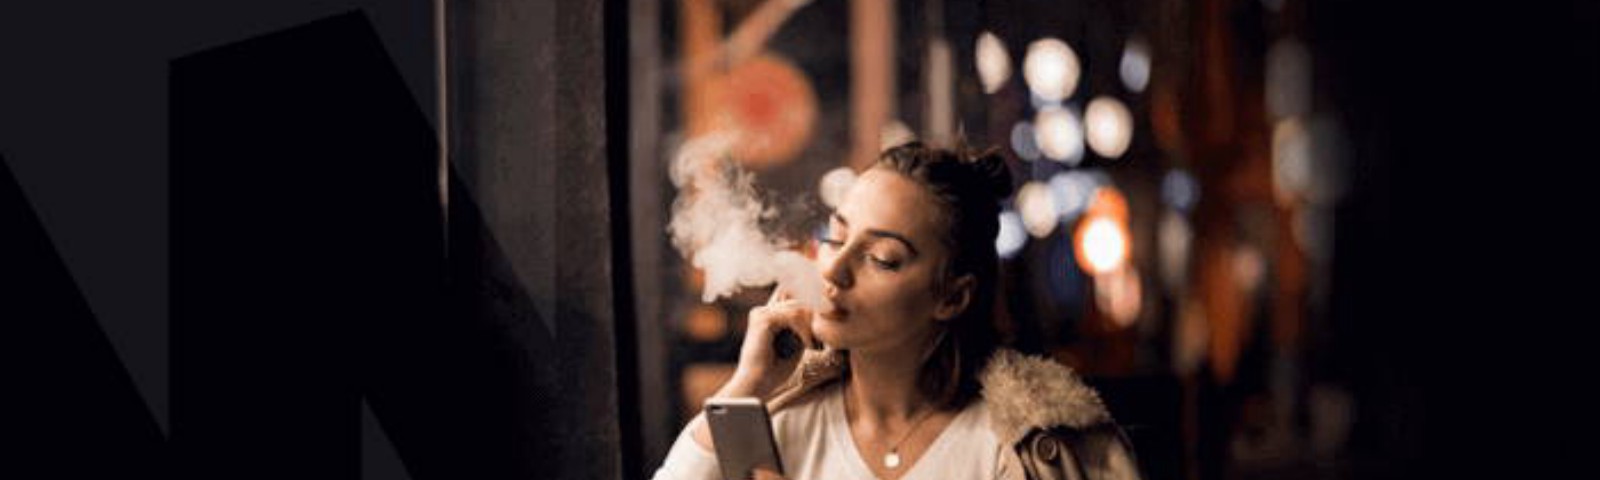 Nicotine Free - složení - zkušenosti - dávkování - jak to funguje